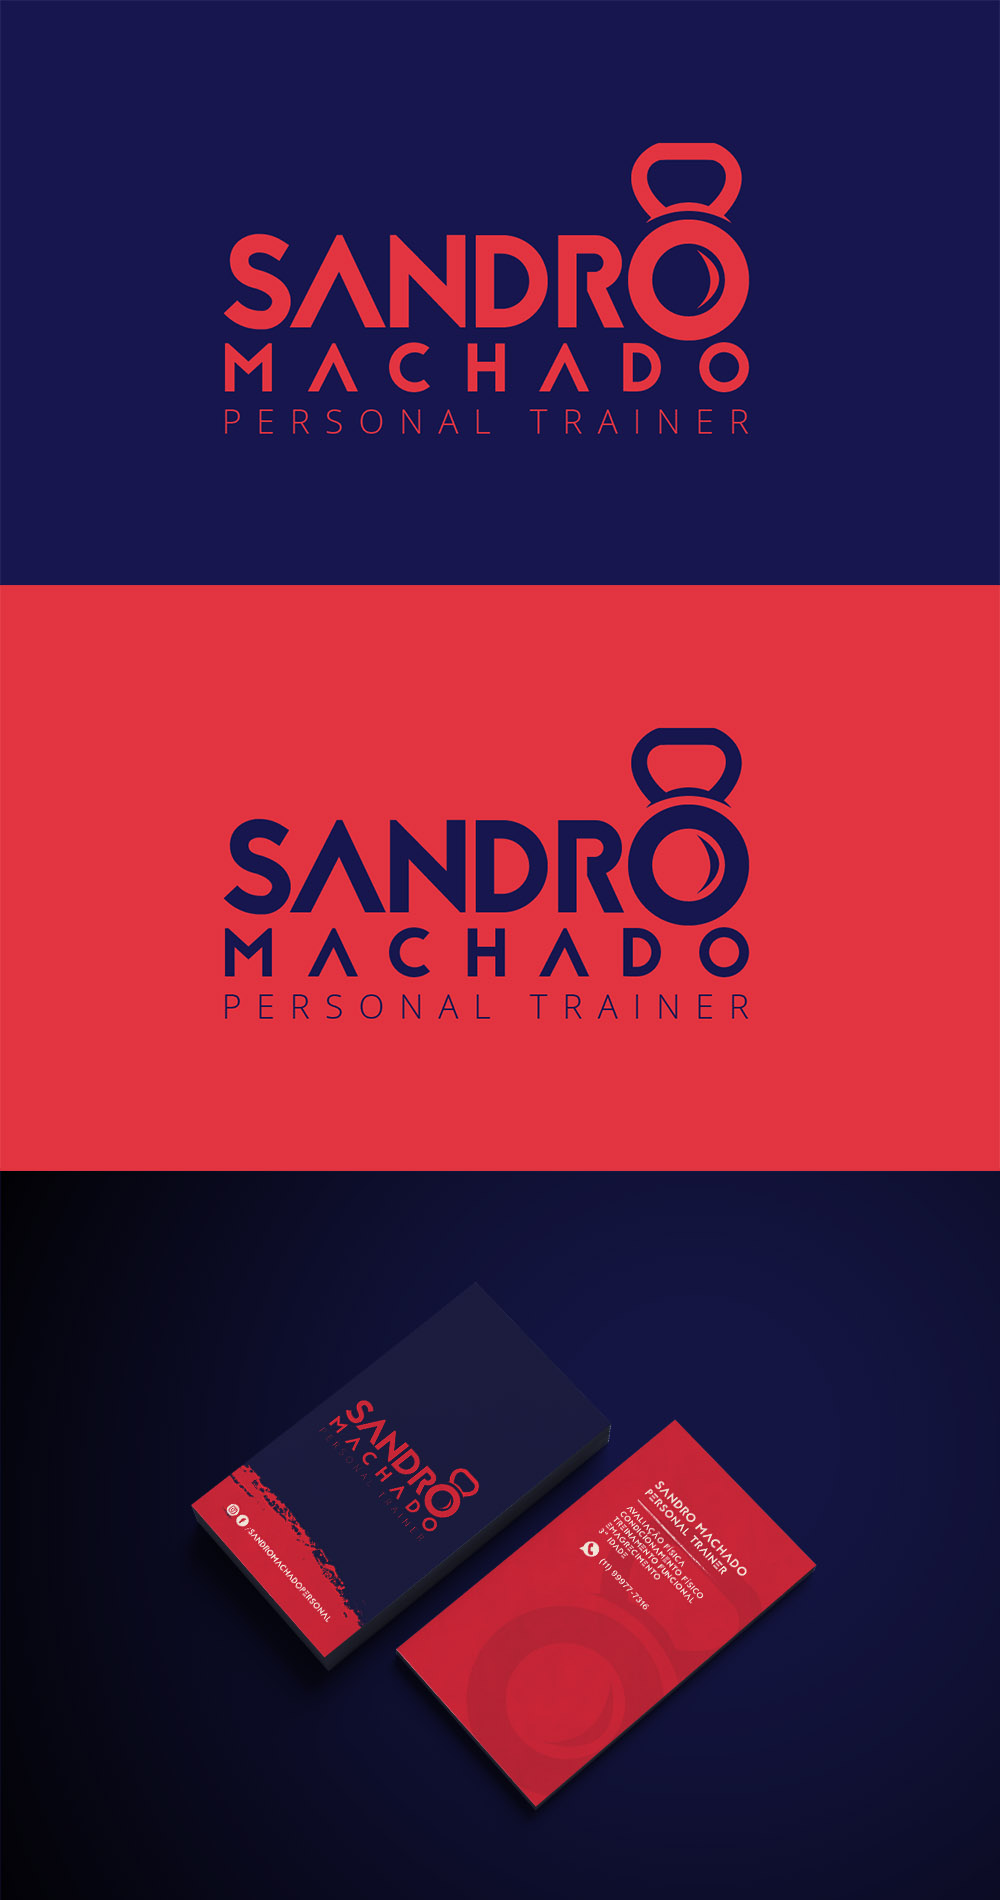 Sandro Machado Personal